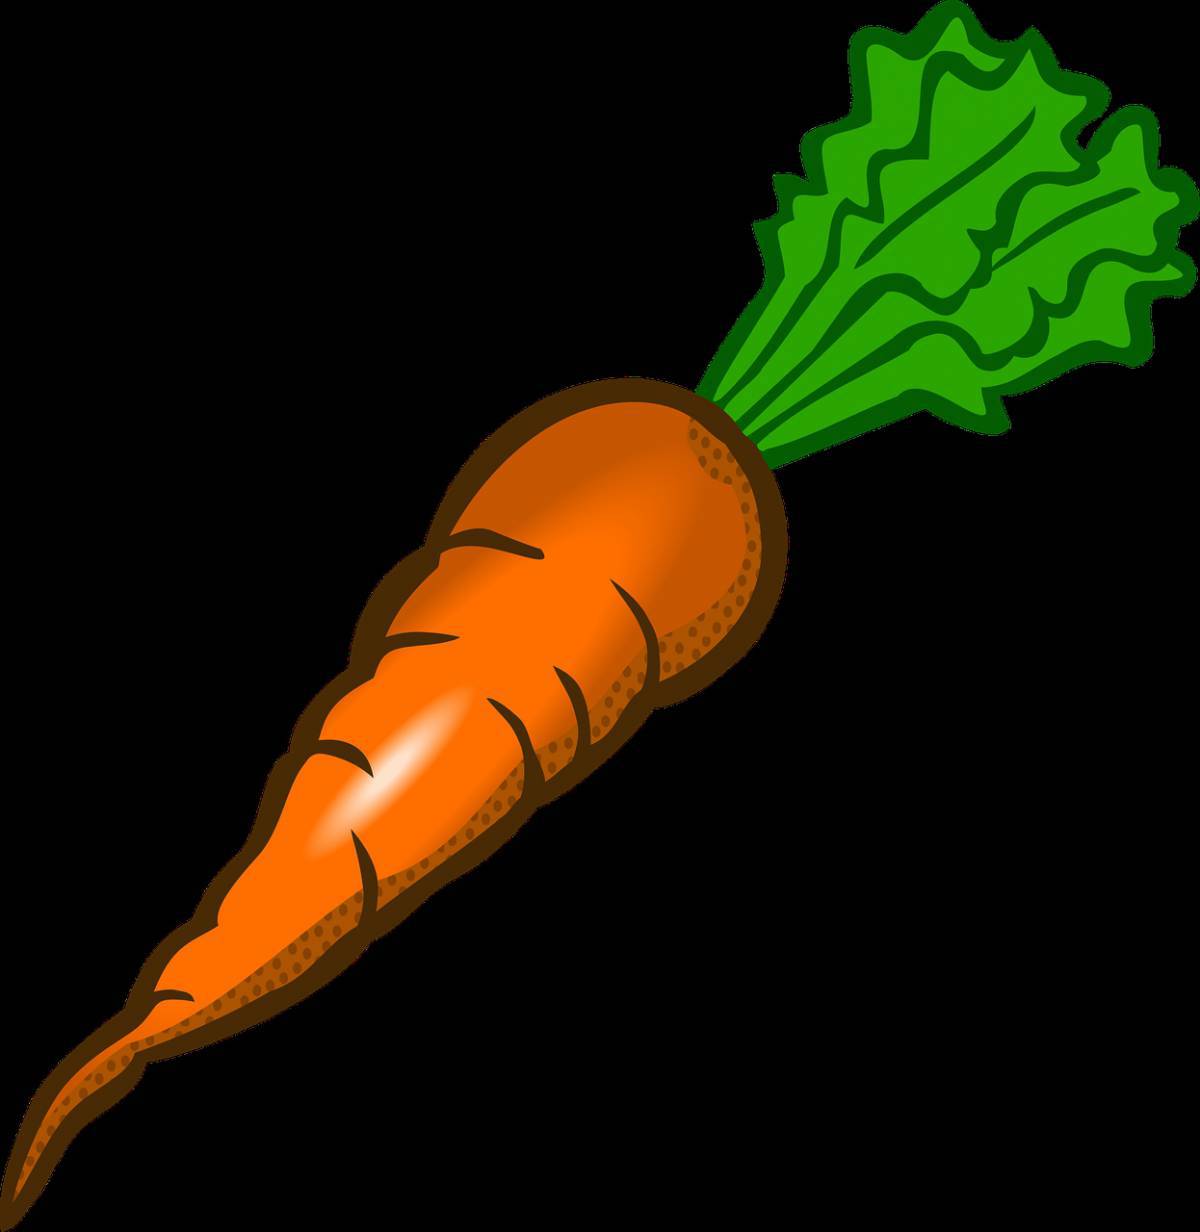 Есть морковь на ночь